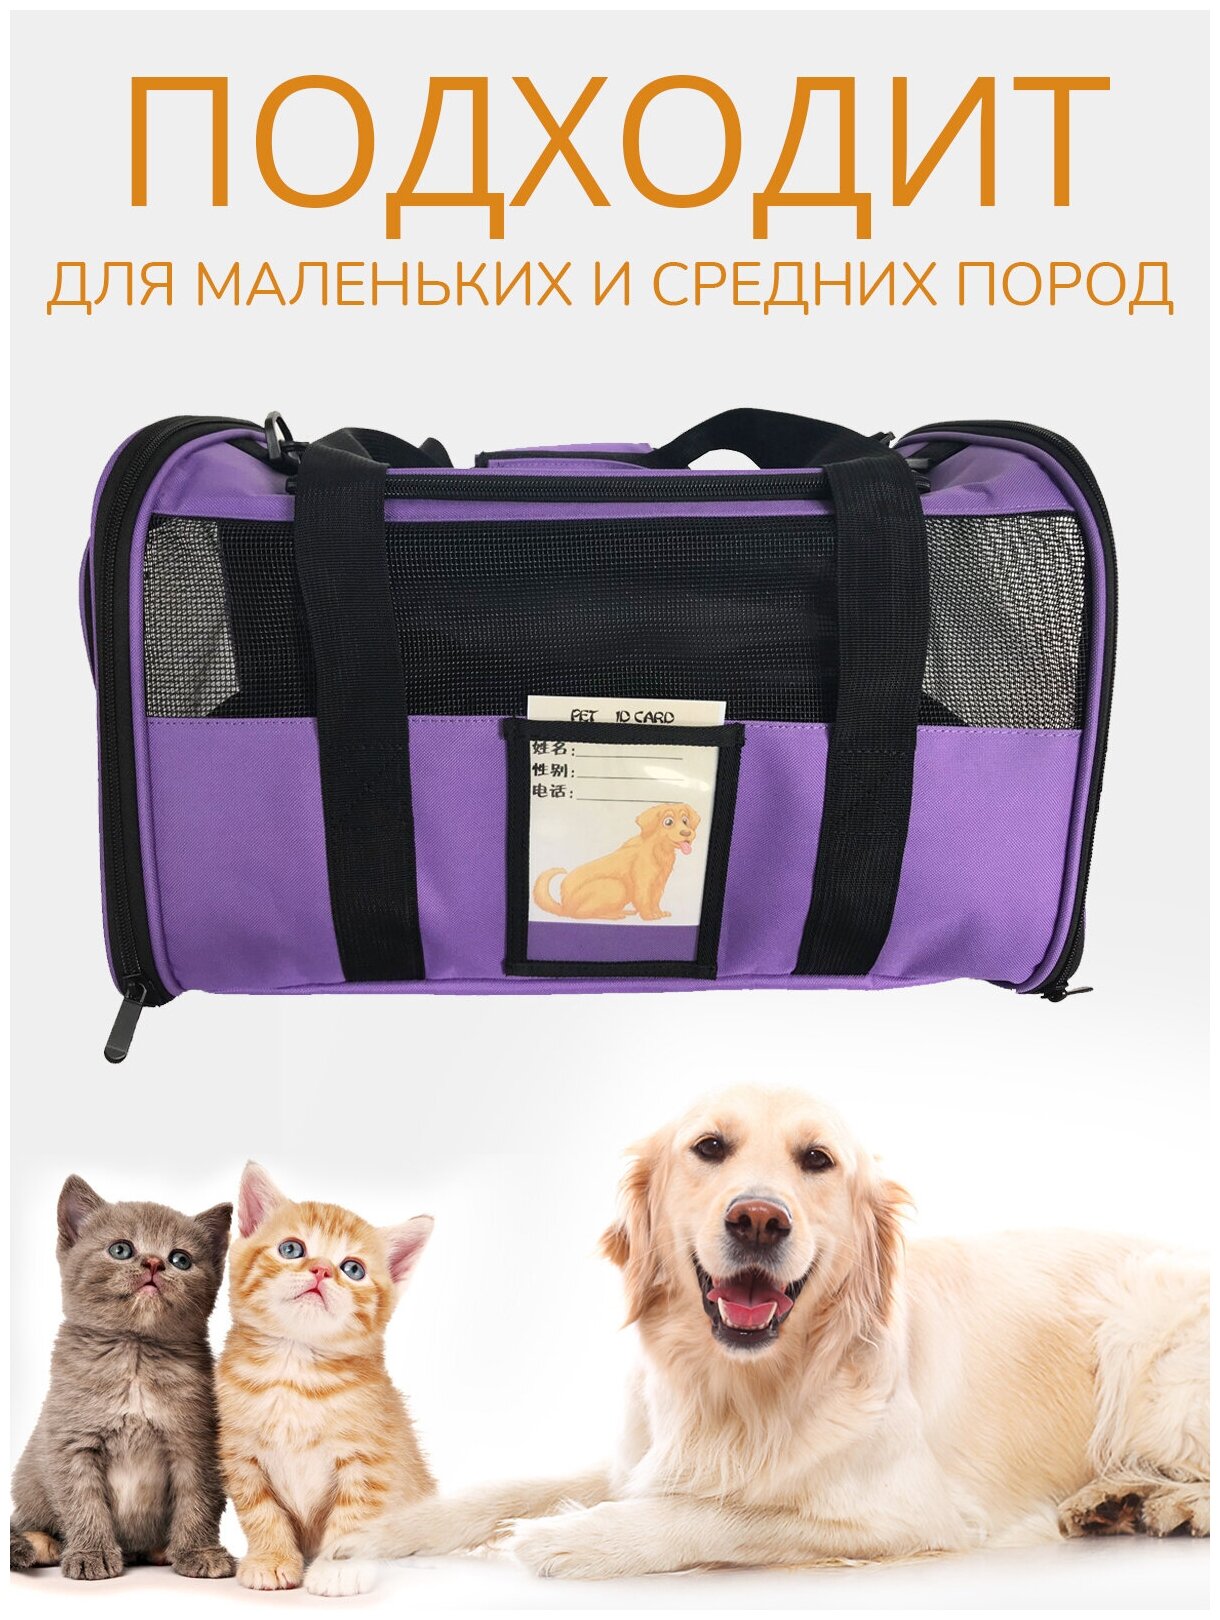 Переноска для животных ZES, сетчатая сумка для переноски кошек и собак мелких пород, размер 45х28х28, фиолетового цвета - фотография № 3